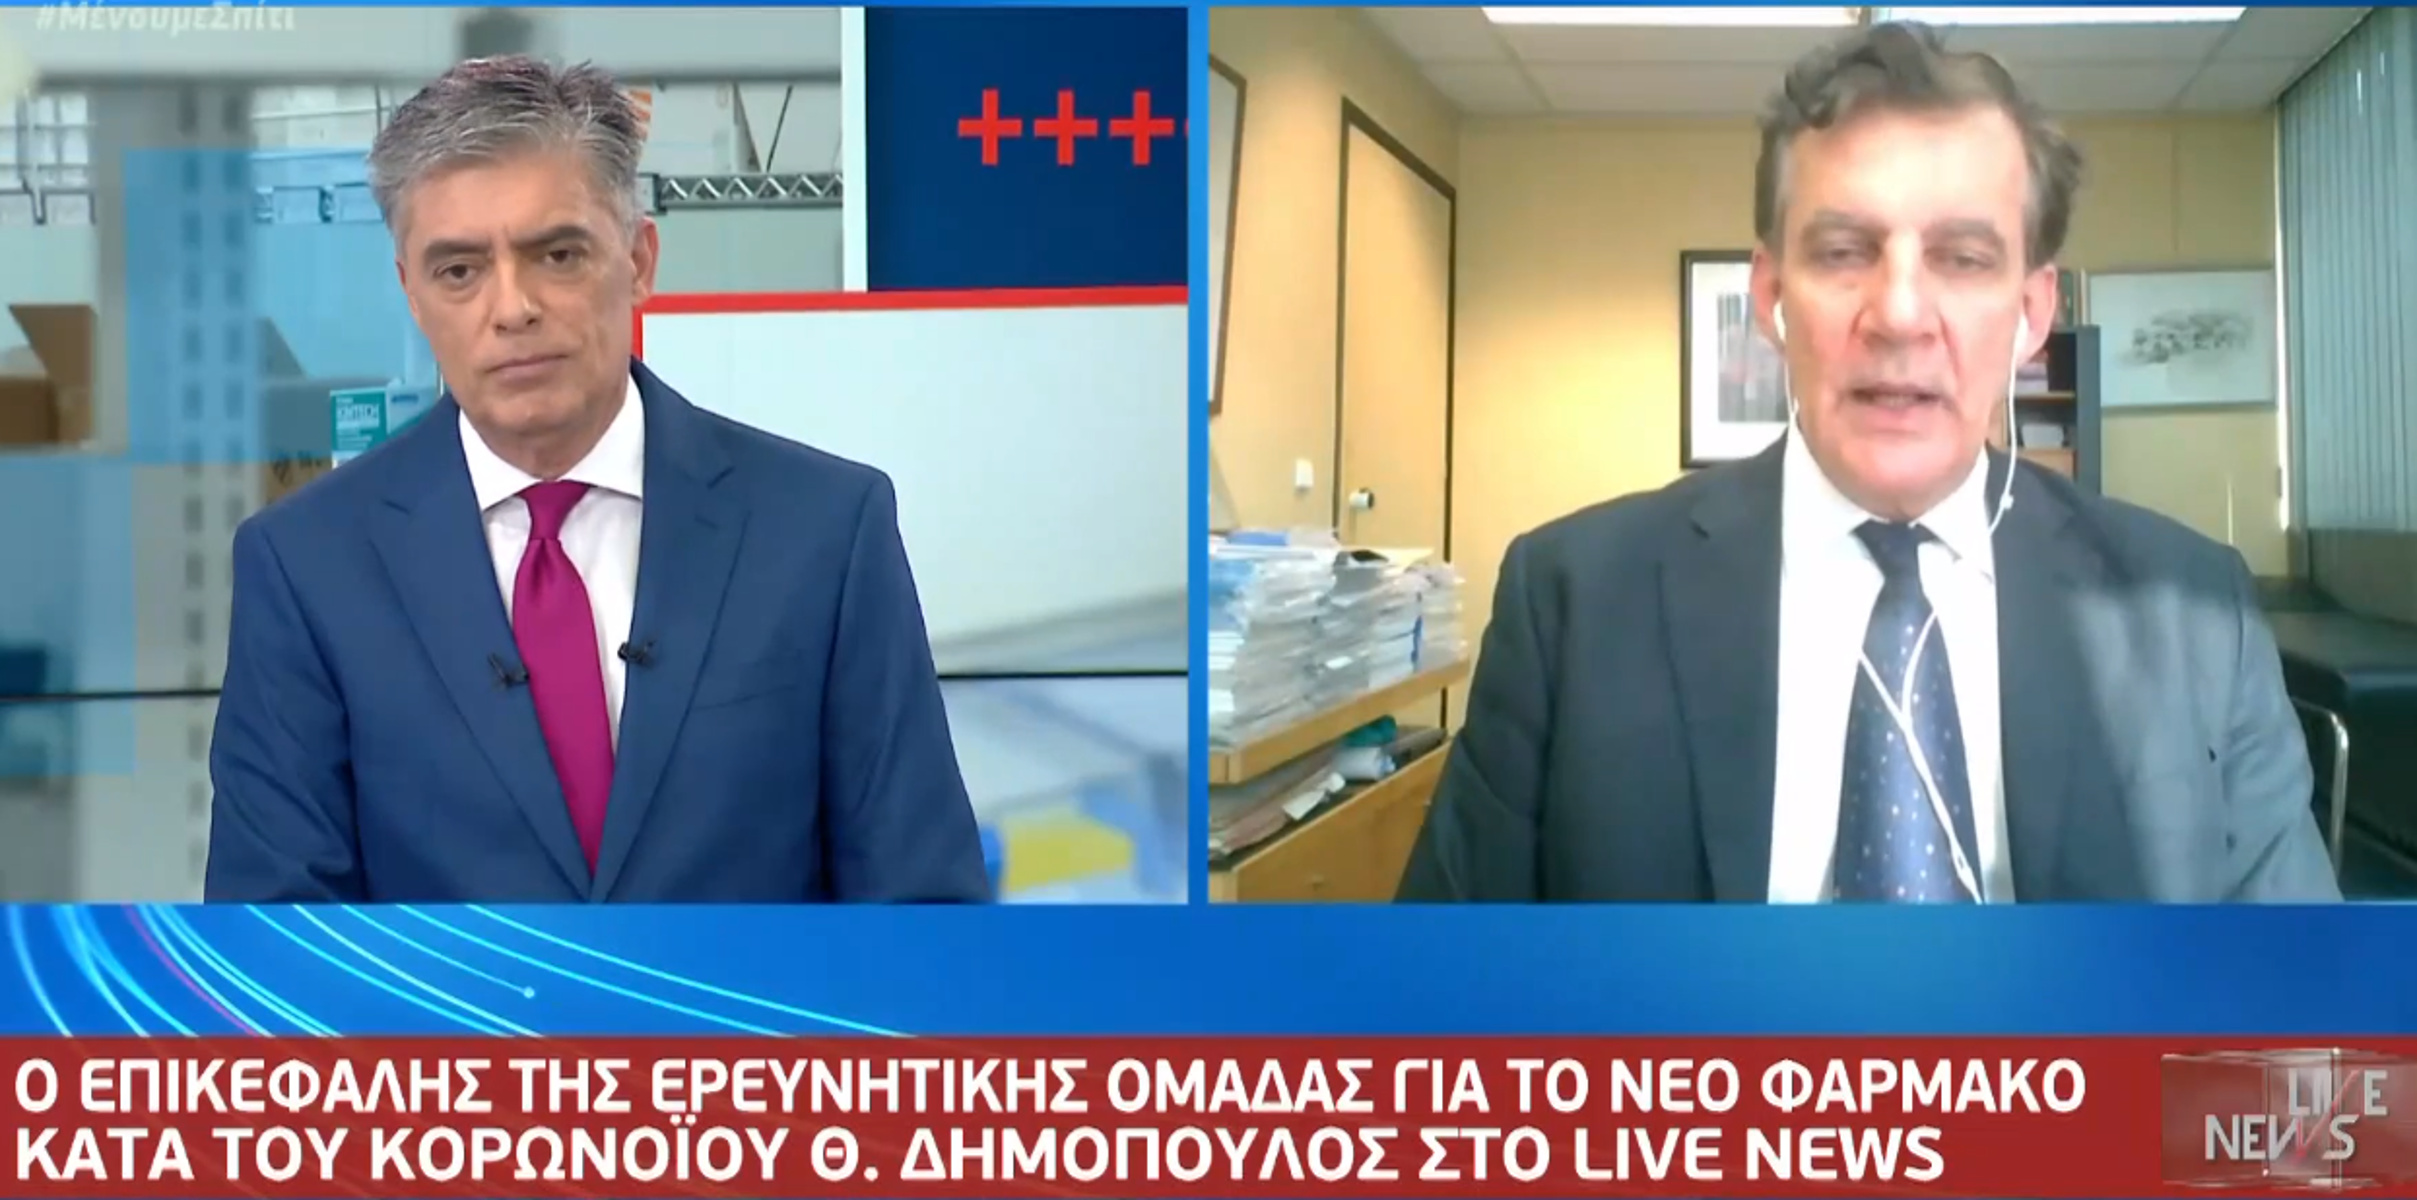 Δημόπουλος στο Live News : Ενθαρρυντικά τα αποτελέσματα της ρεμδεσιβίρης κατά του κορονοϊού